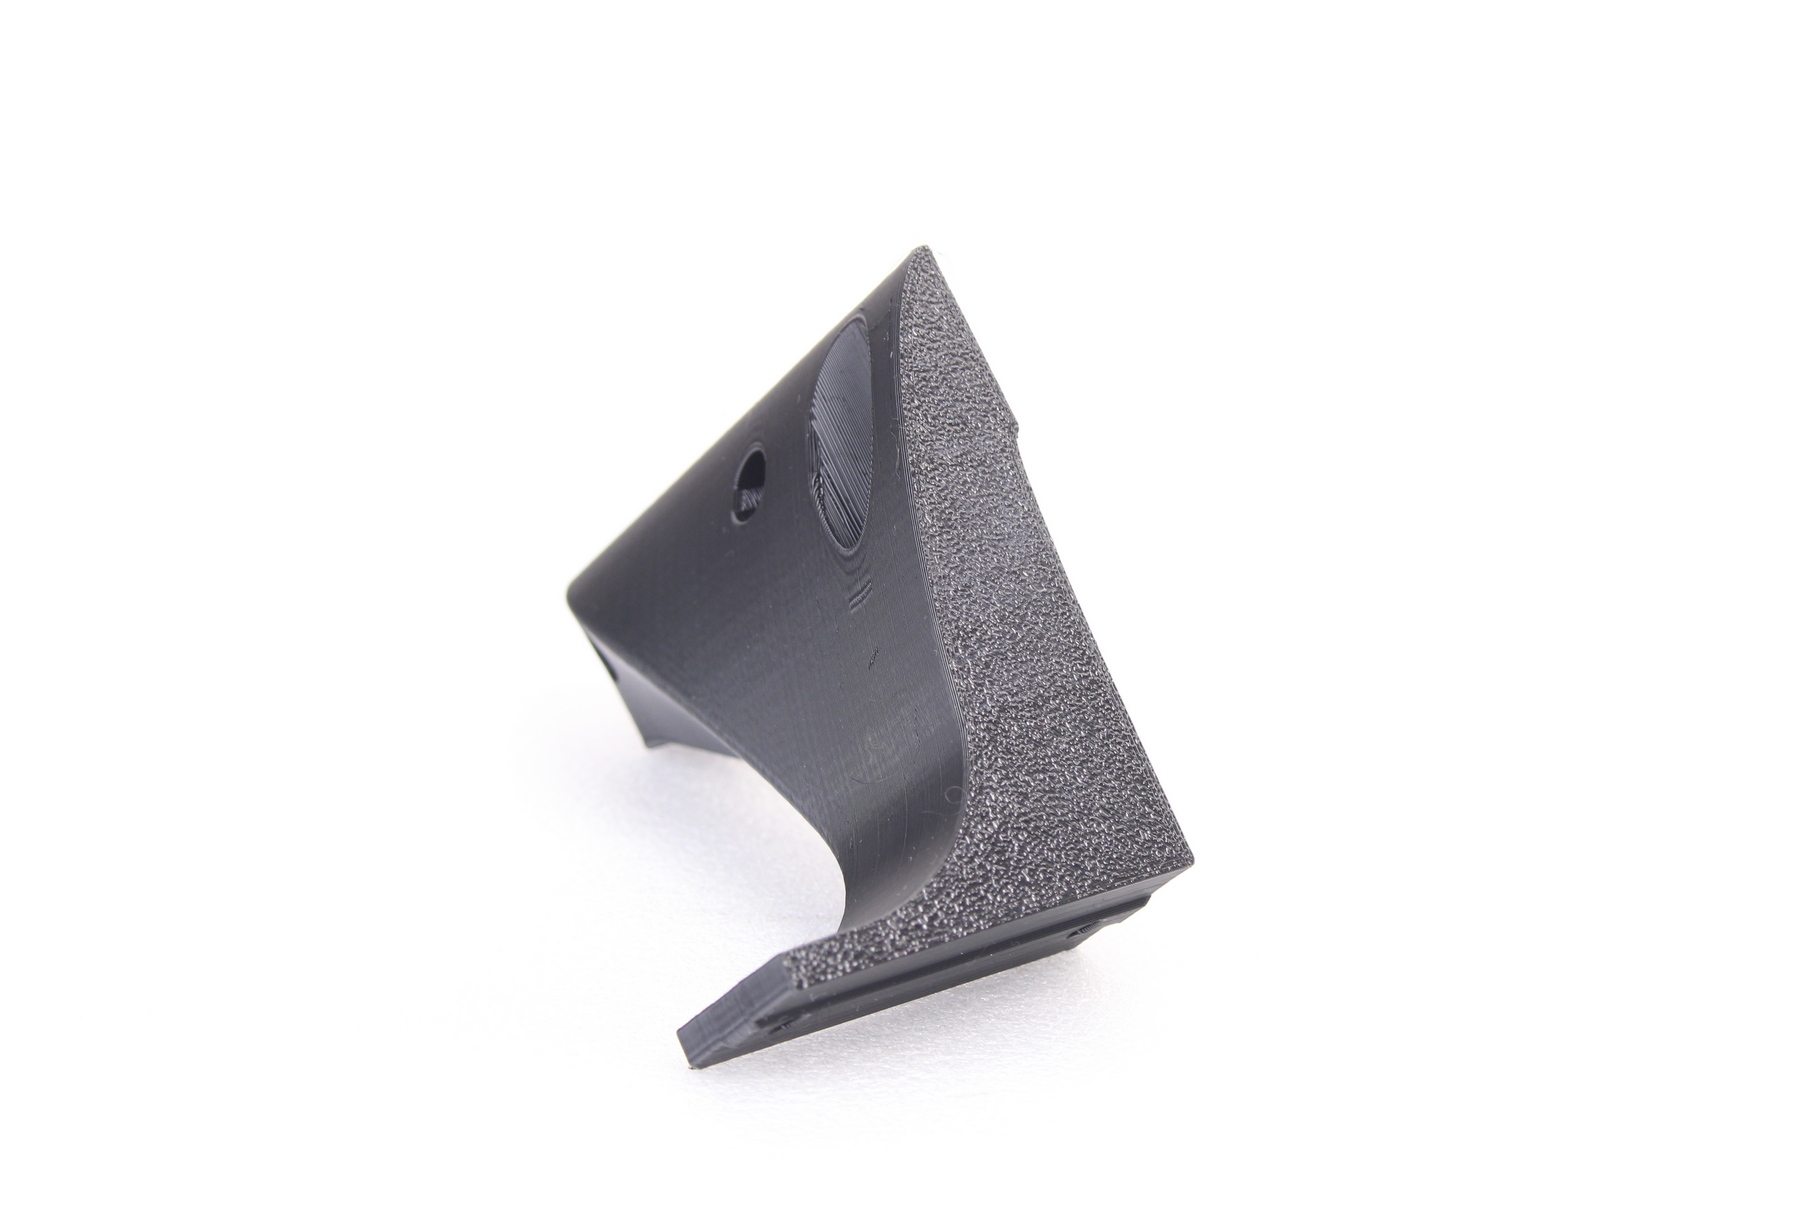 Prusa Mini brace pritned on RatRig V Core 3 in PETG 1 | RatRig V-Core 3 Review: Premium CoreXY 3D Printer Kit